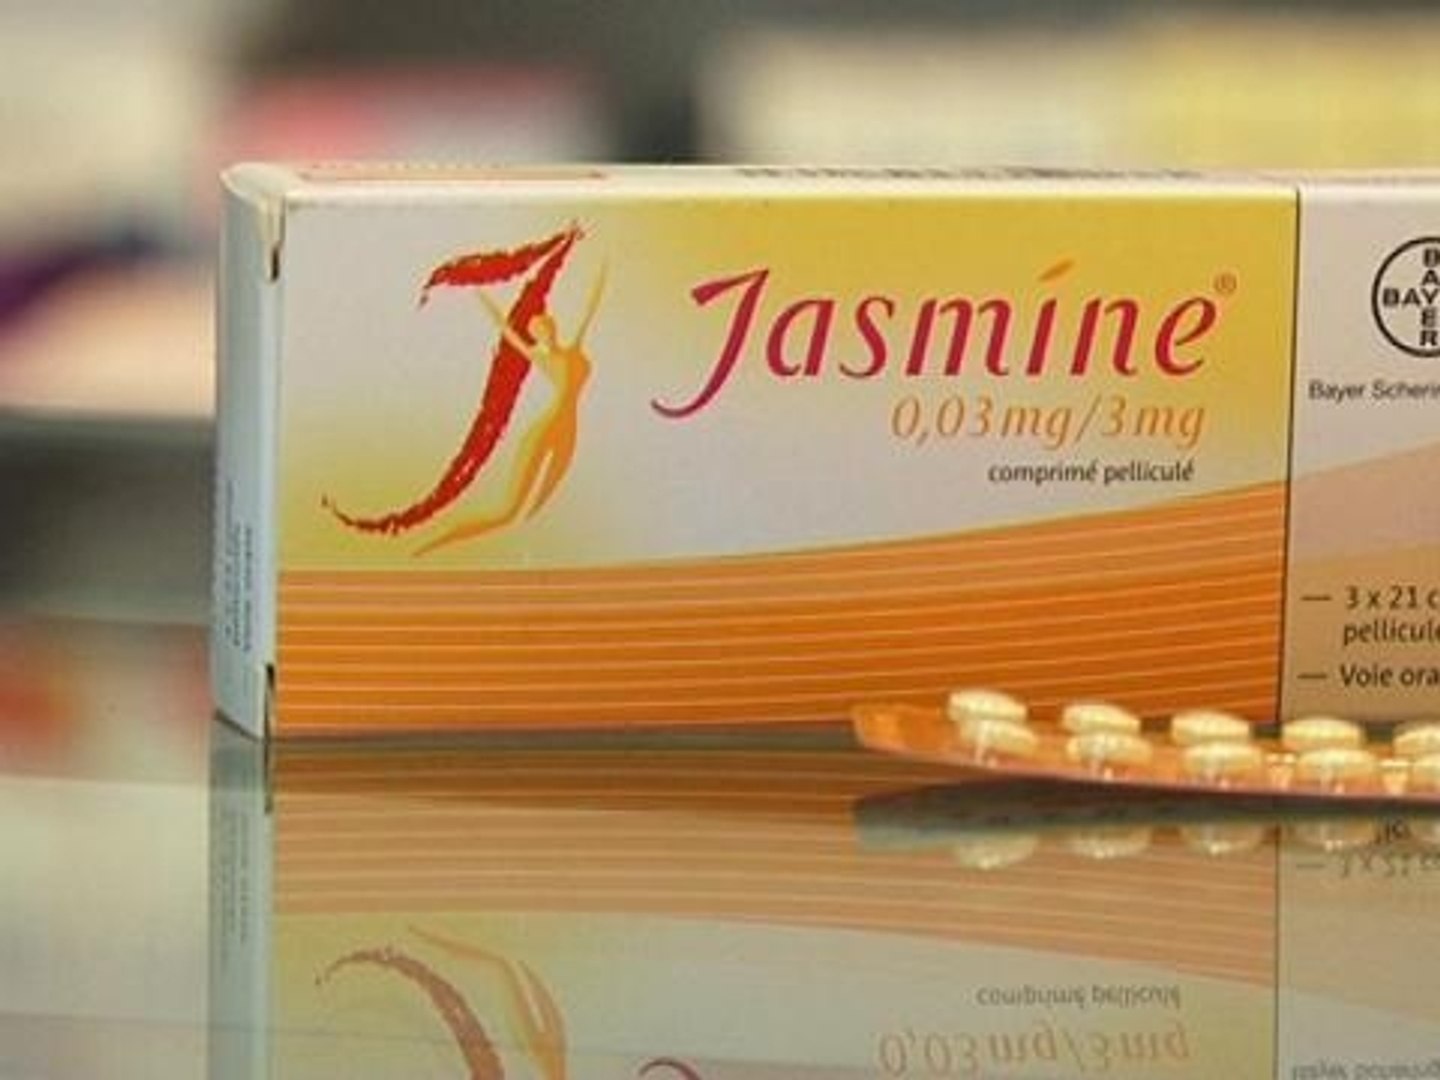 Les femmes choisissent moins la pilule pour leur contraception - 14/05